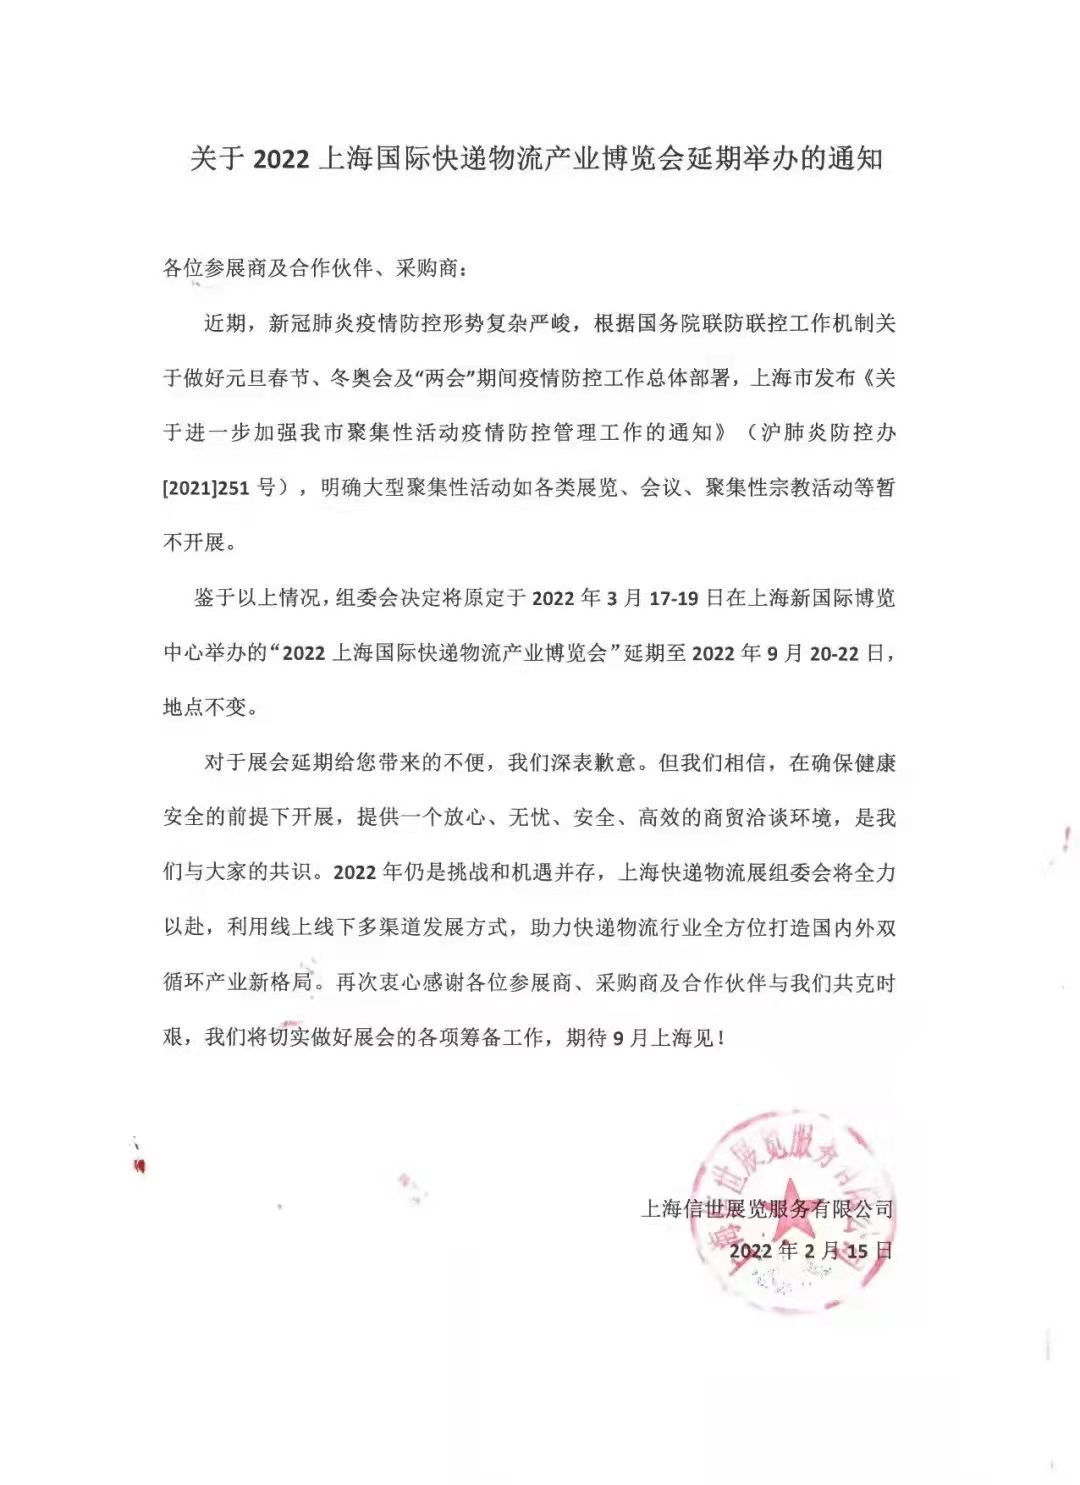 【邀请函】2022上海国际快递物流产业博览会（延期至2022年9月）